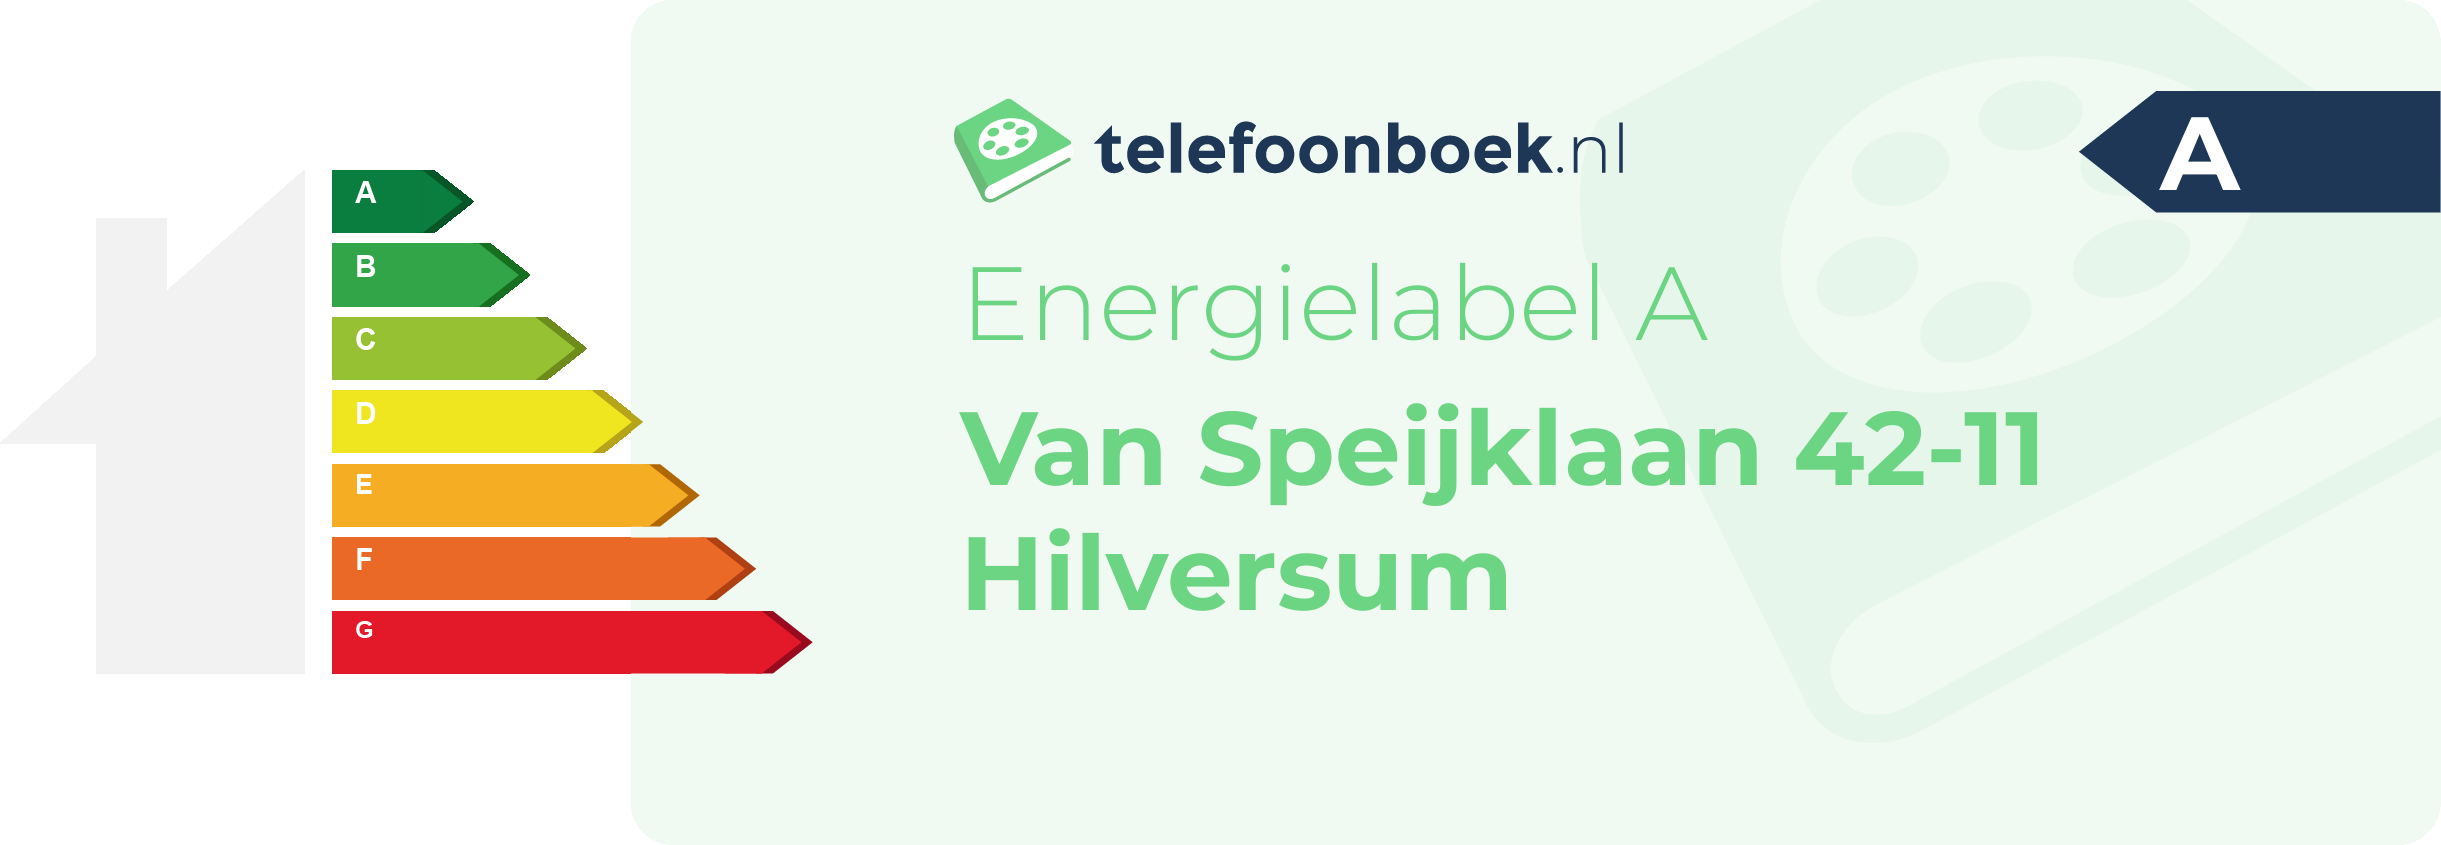 Energielabel Van Speijklaan 42-11 Hilversum